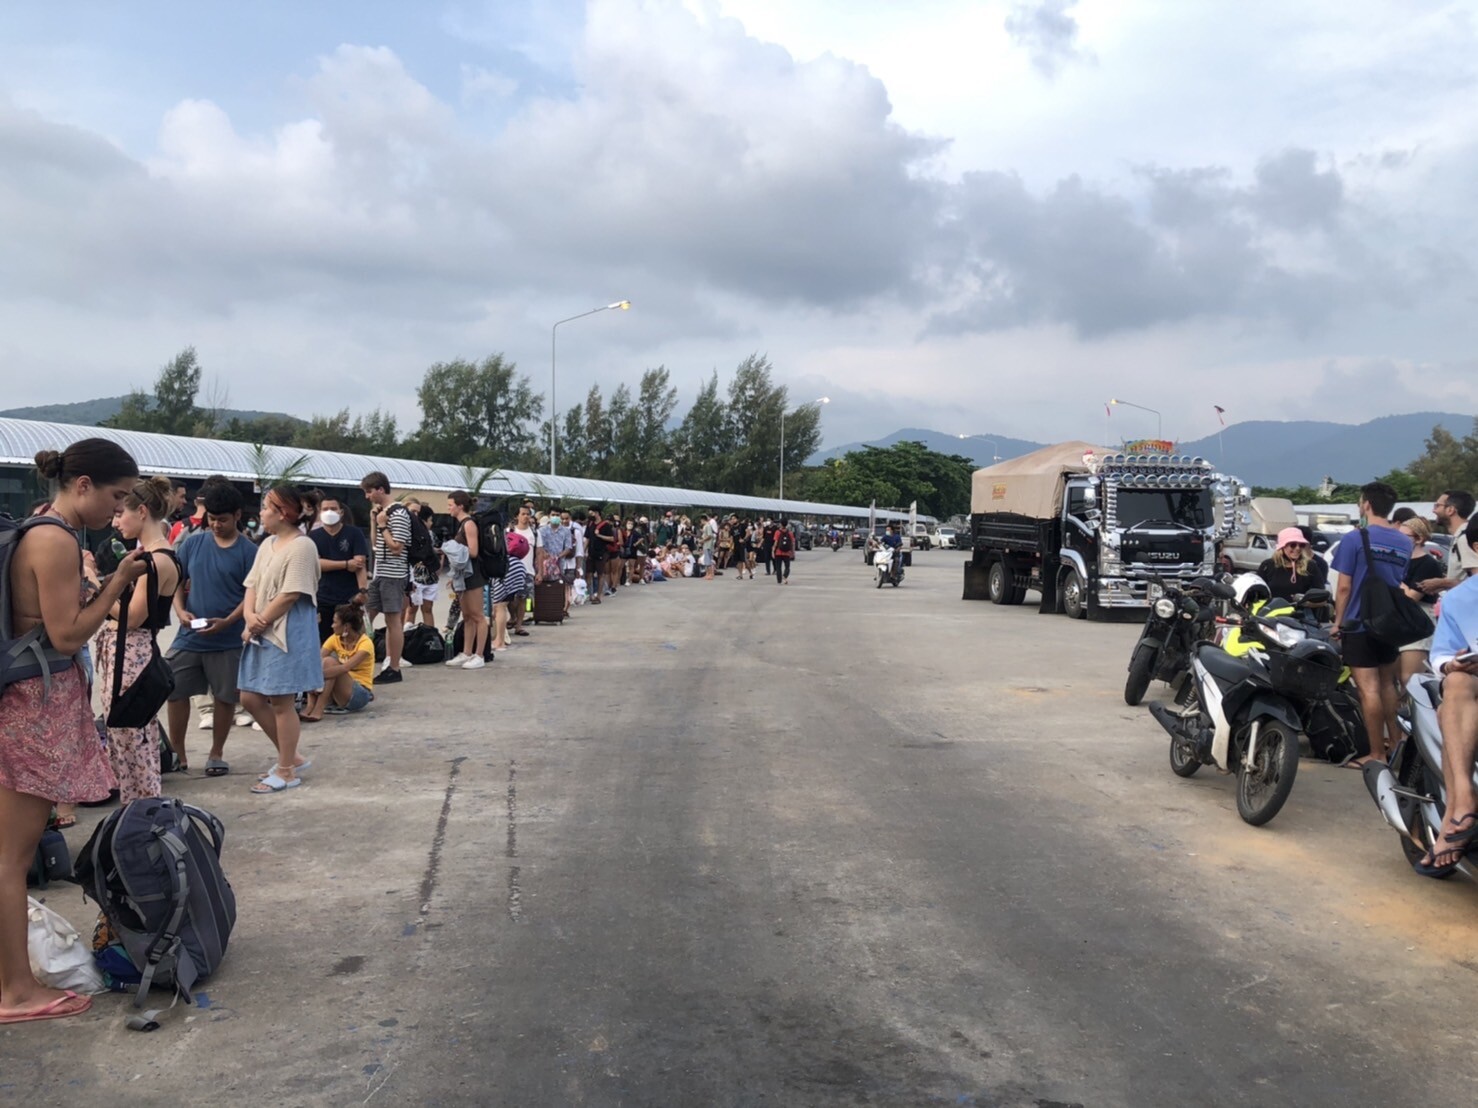 พะงันคึกคักสุดรอบ 2 ปี นักเที่ยวไทย-เทศ แห่เที่ยวสงกรานต์-ฟูลมูน "ราชาเฟอร์รี่" จัดเรือเสริมเส้นพะงัน 4 เที่ยว/วัน รับส่งไร้ผู้โดยสารตกค้าง